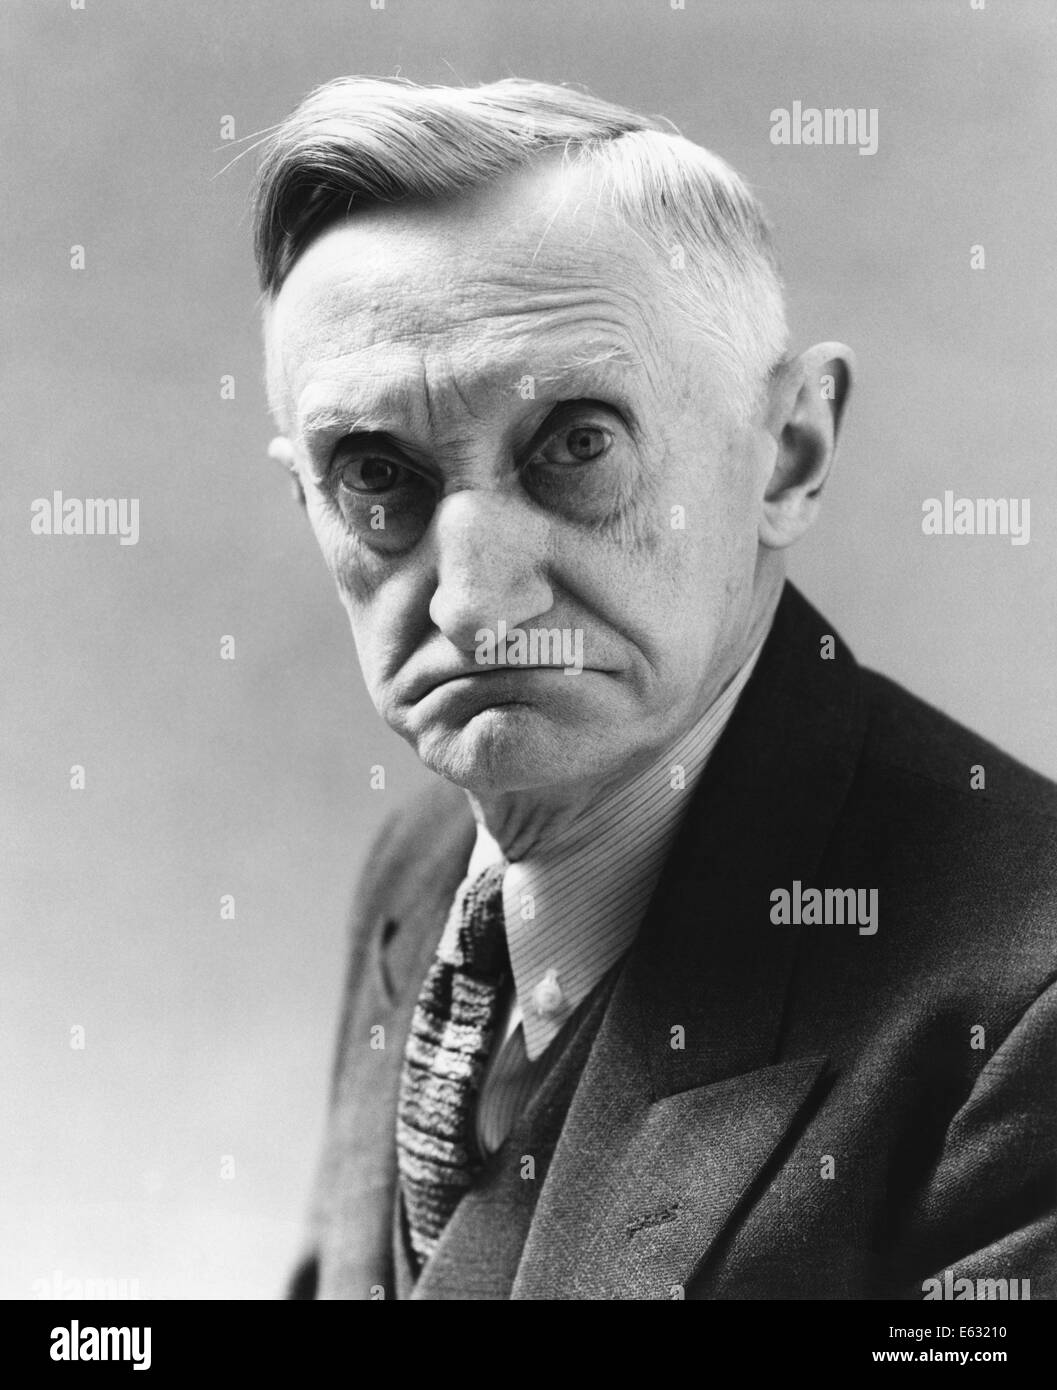 1930s-1940s-senior-elderly-man-with-grim-serious-facial-expression-E63210.jpg